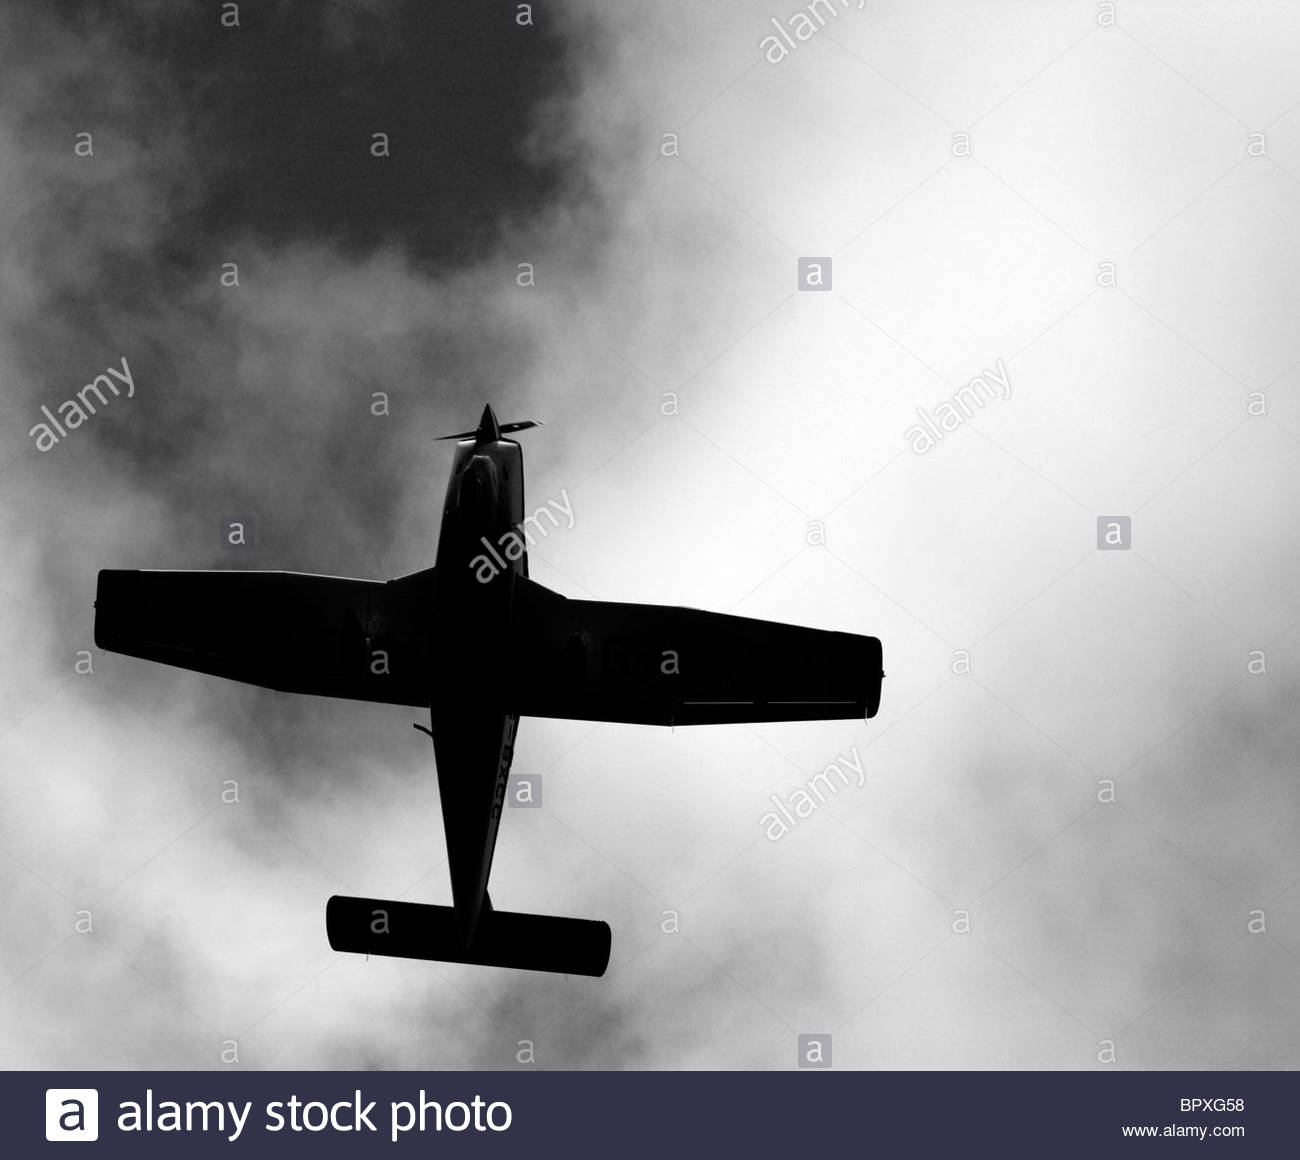 Avión de hélice silueteado contra el cielo nublado Foto de stock